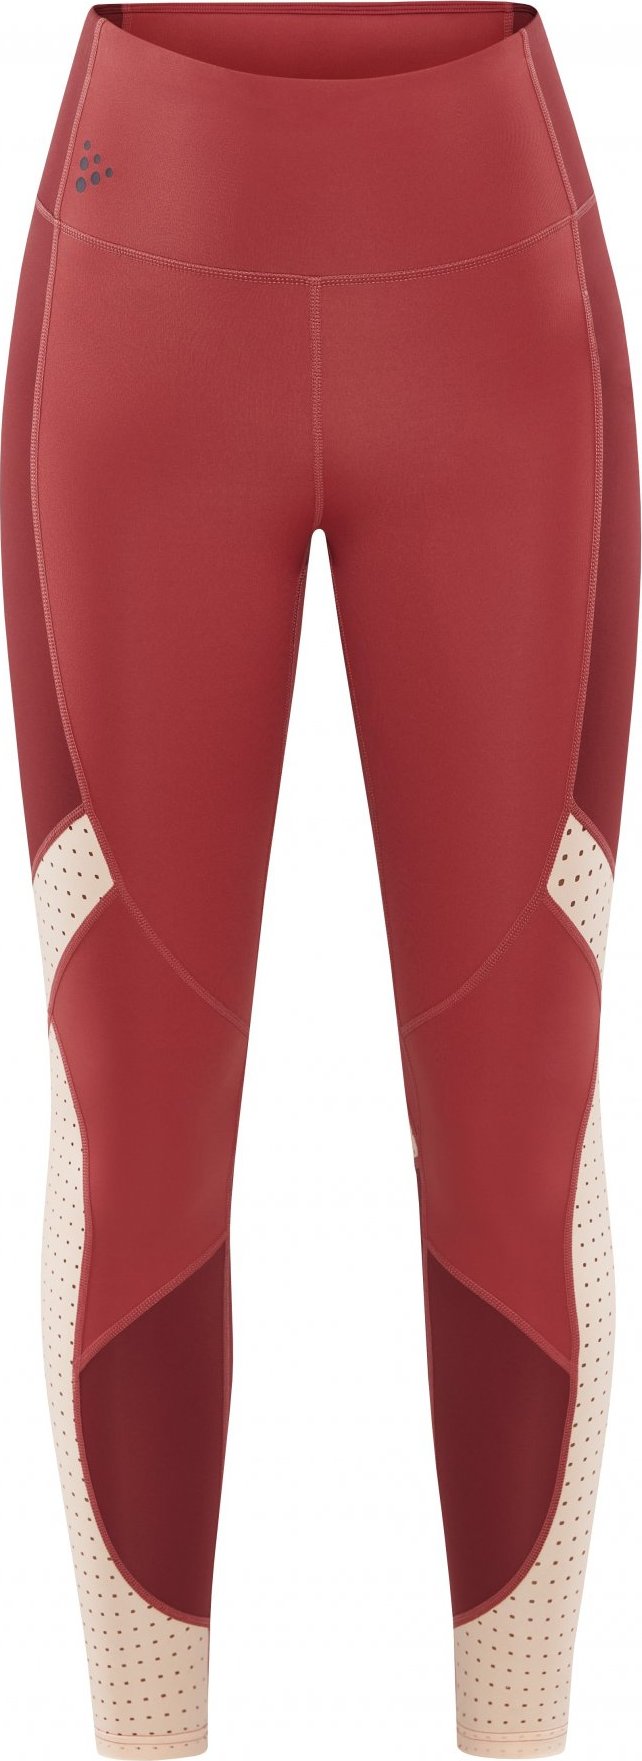 Dámské elastické kalhoty CRAFT Adv Hit Tights 2 červená Velikost: XS